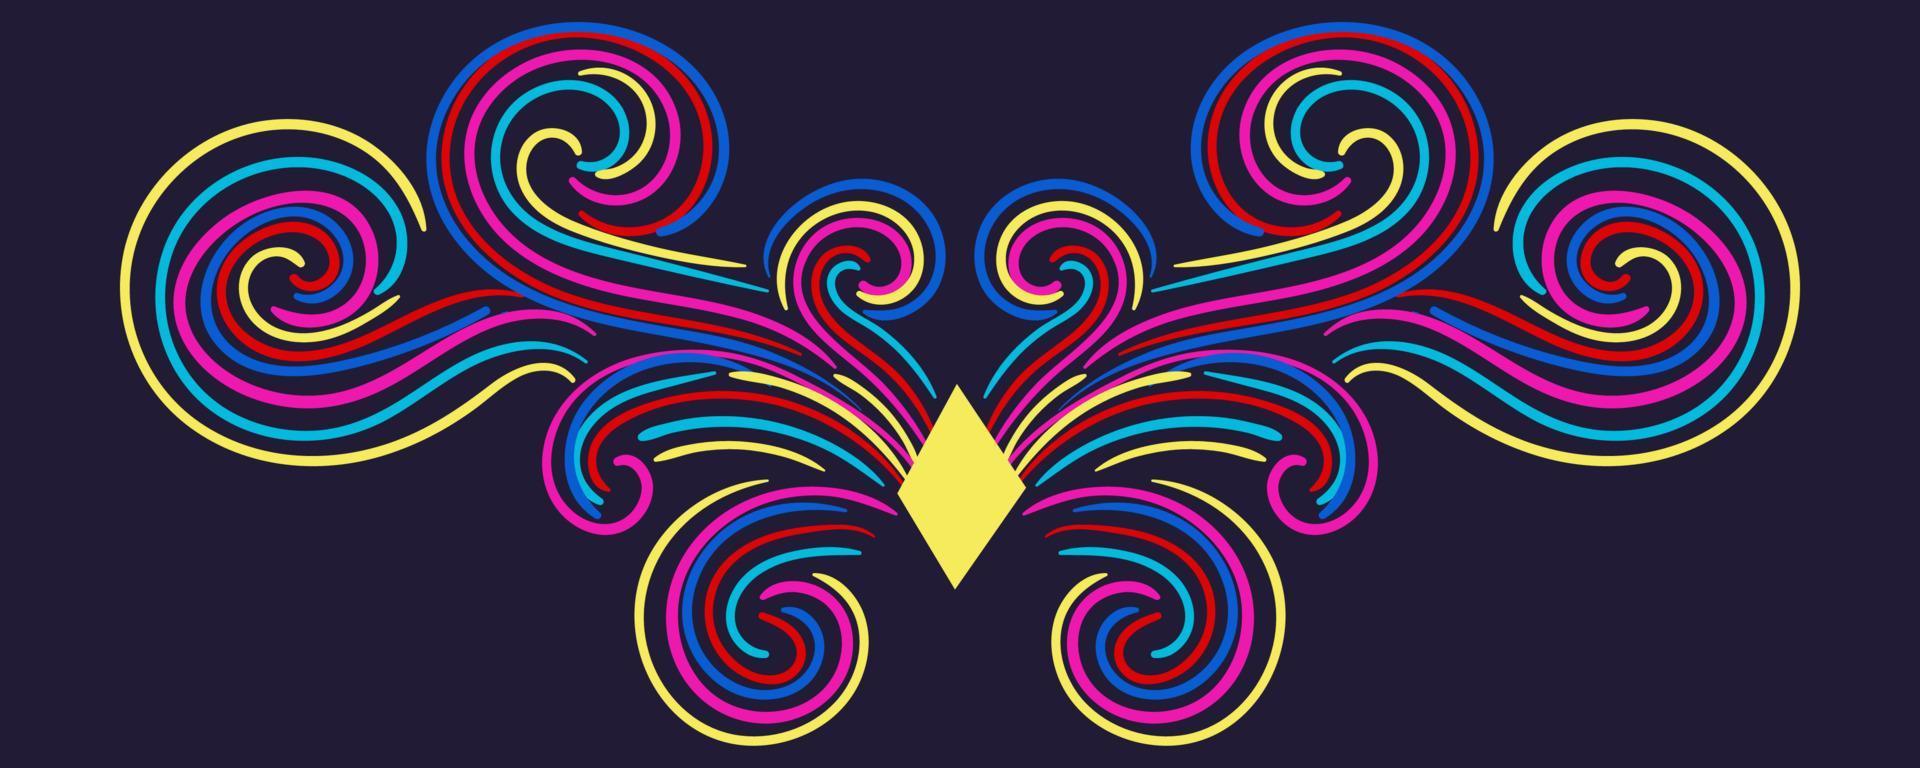 kleurrijk abstract krullend element voor ontwerp, swirl, curl. scheidingslijn, frame geïsoleerd op een donkere achtergrond. vector